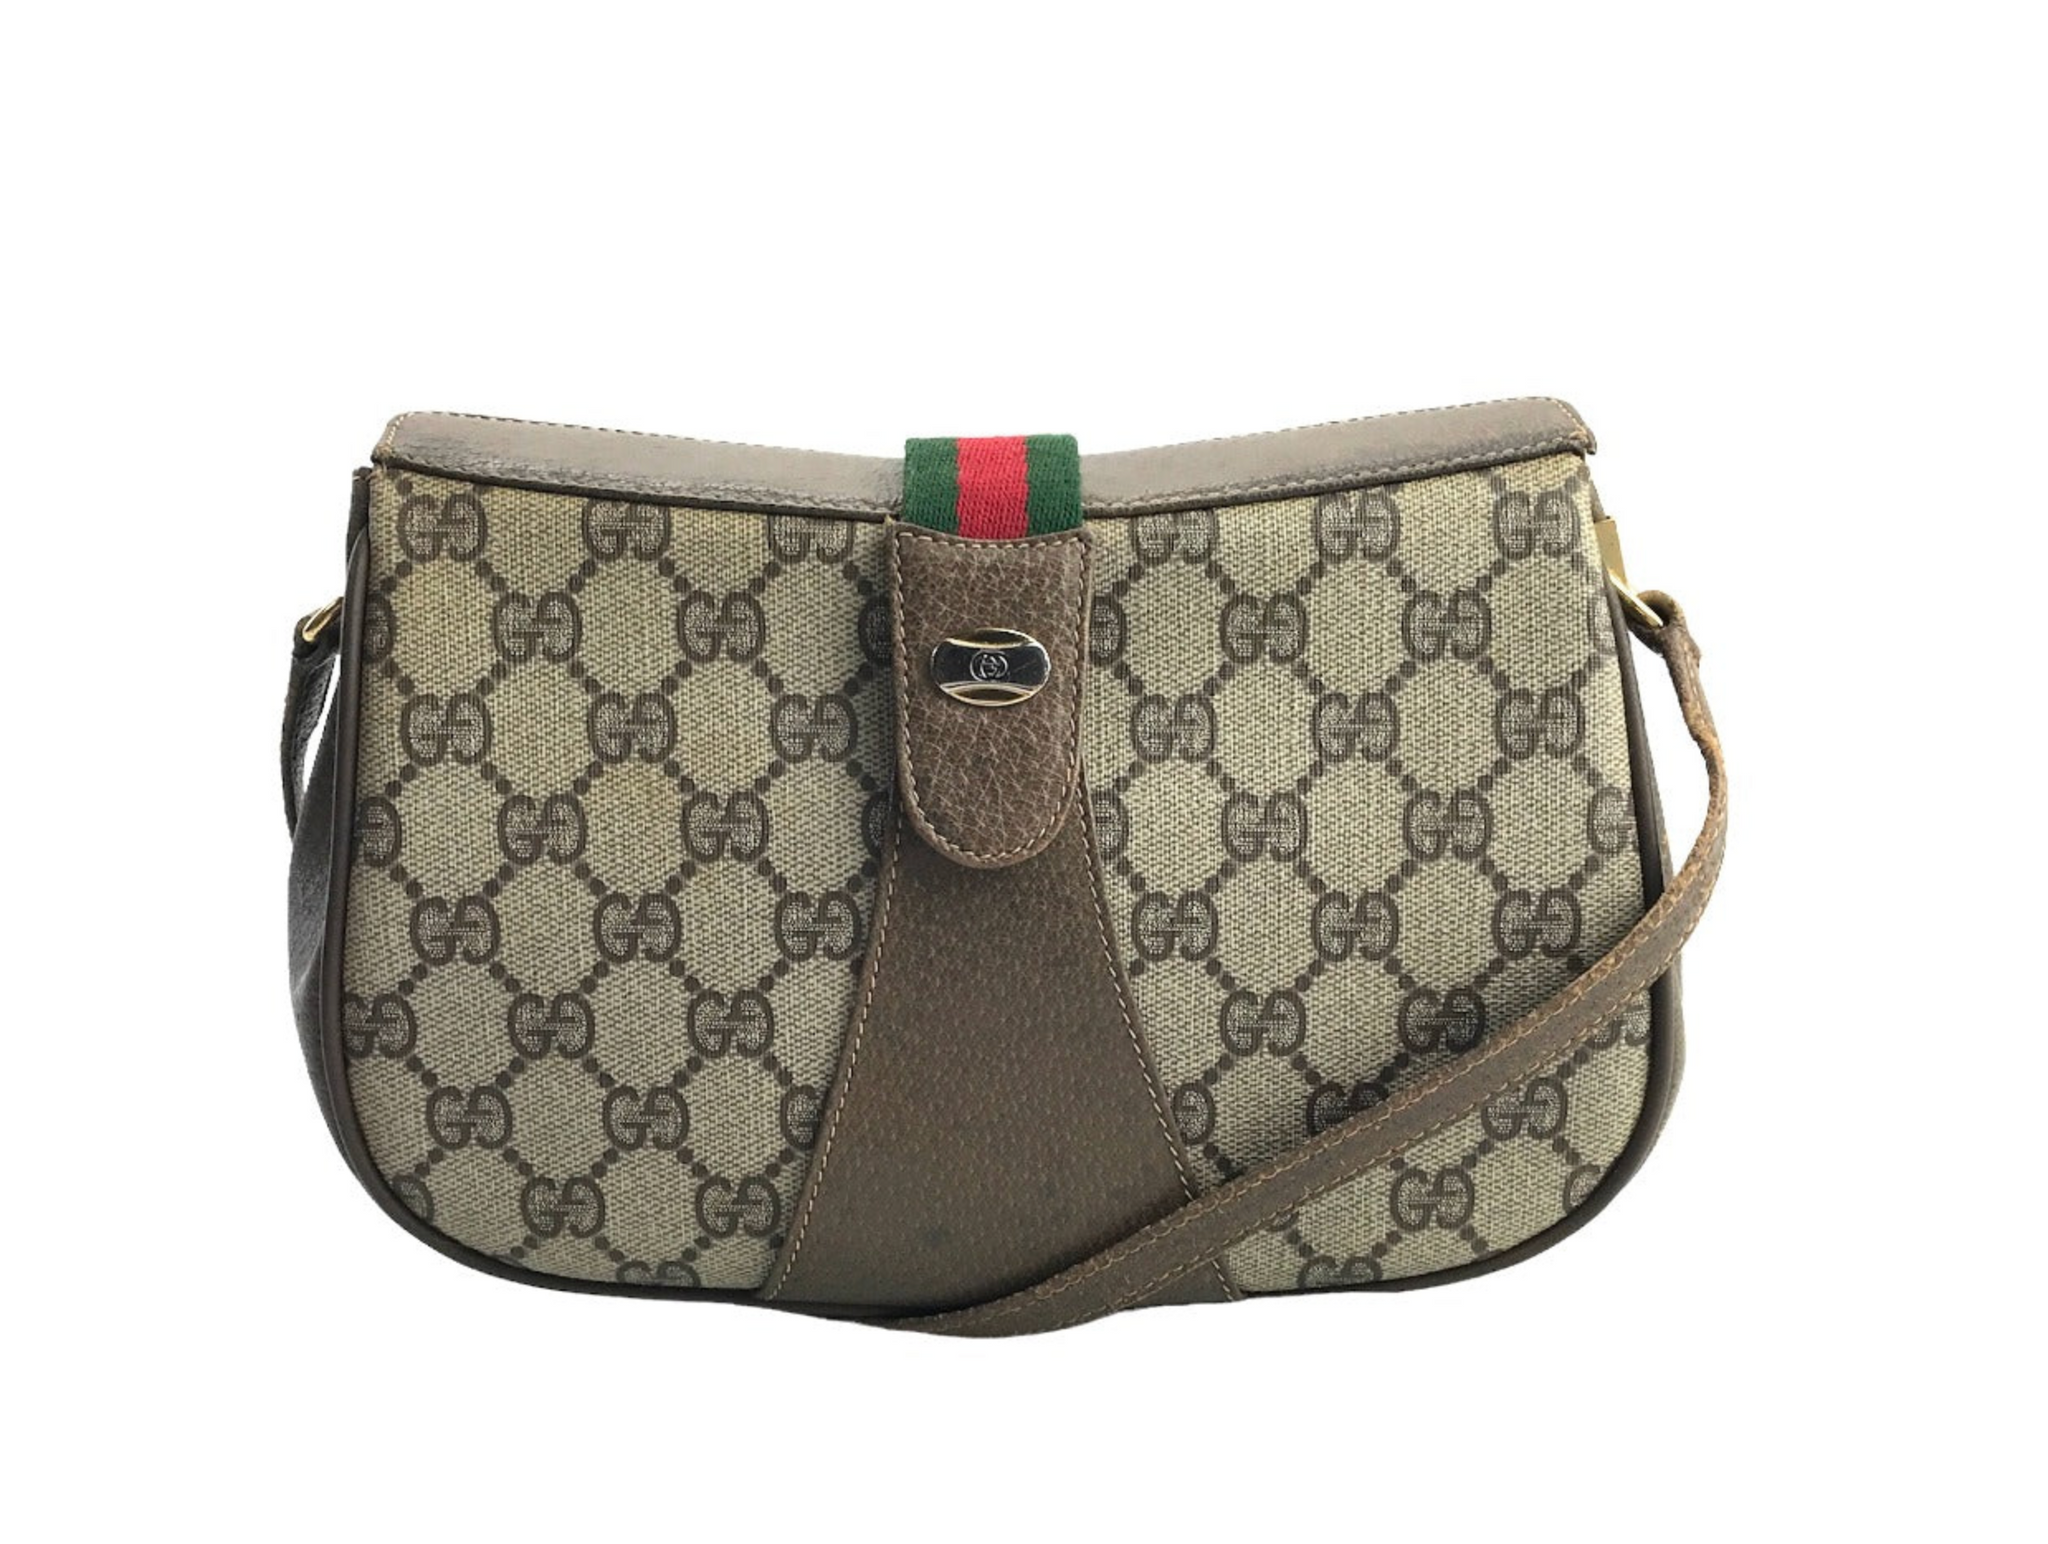 Vintage Gucci purse - Women's handbags